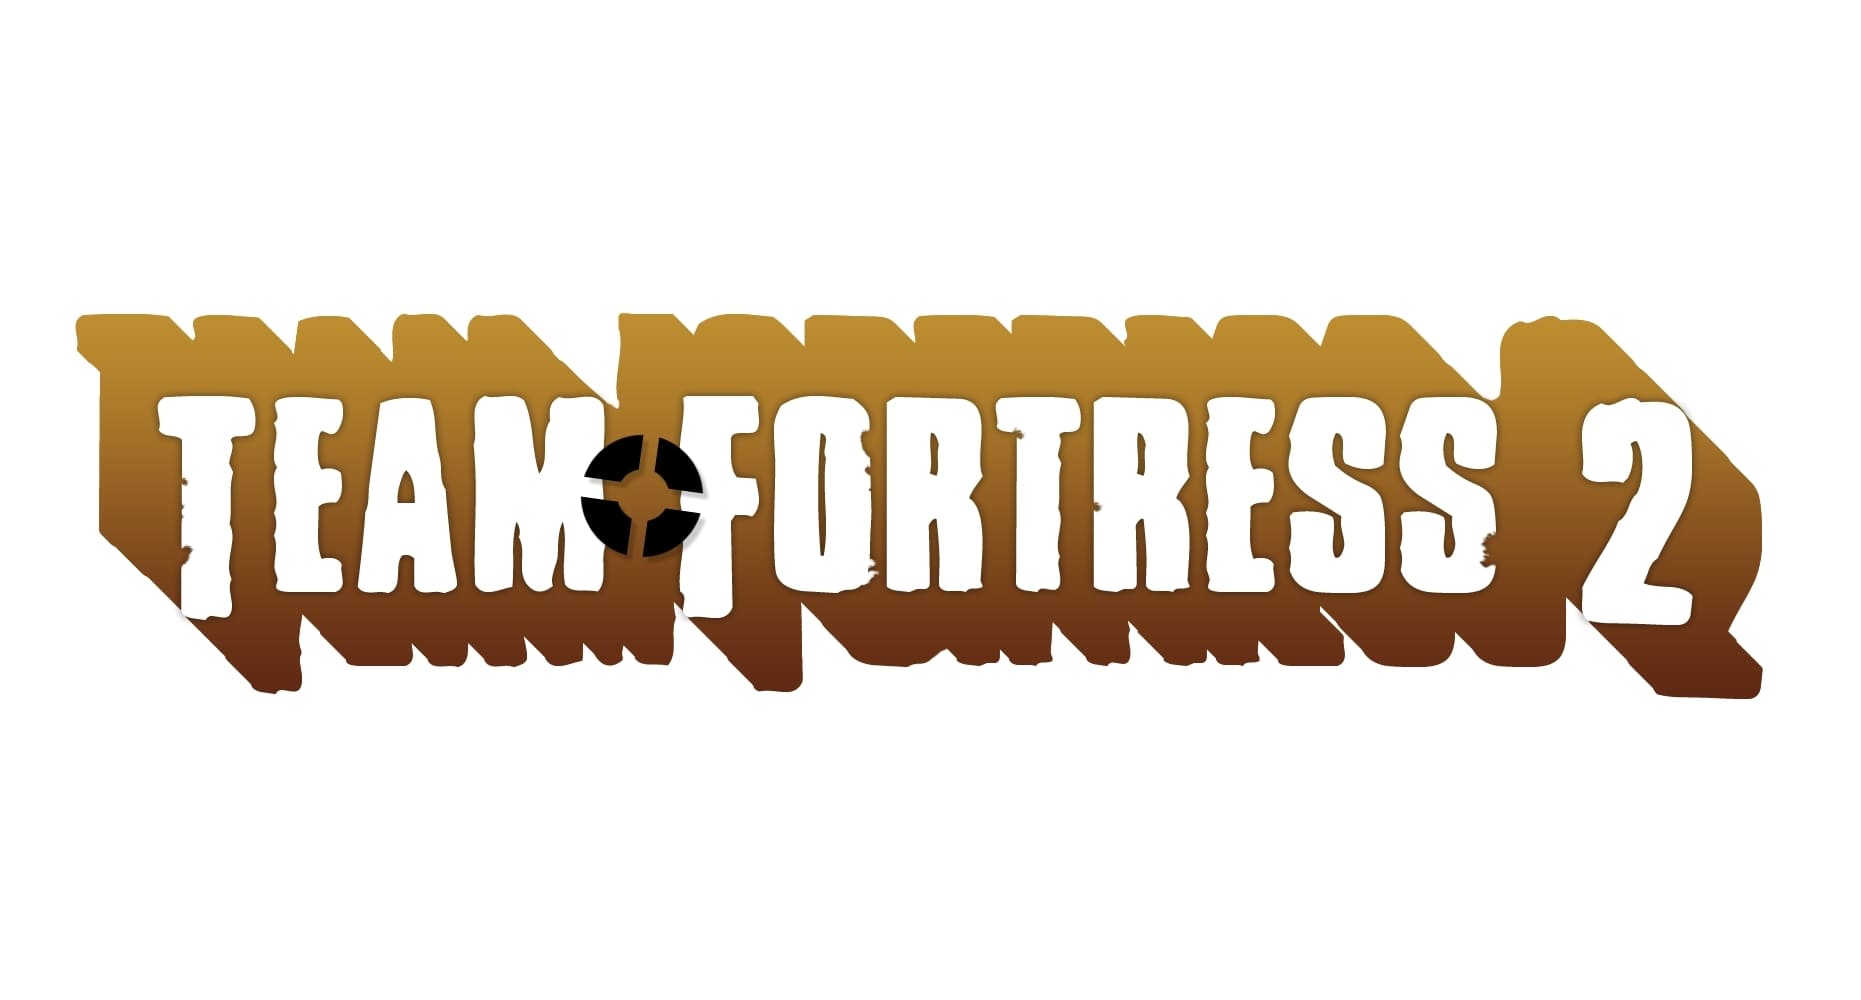 Team Fortress 2 Logo - KibrisPDR